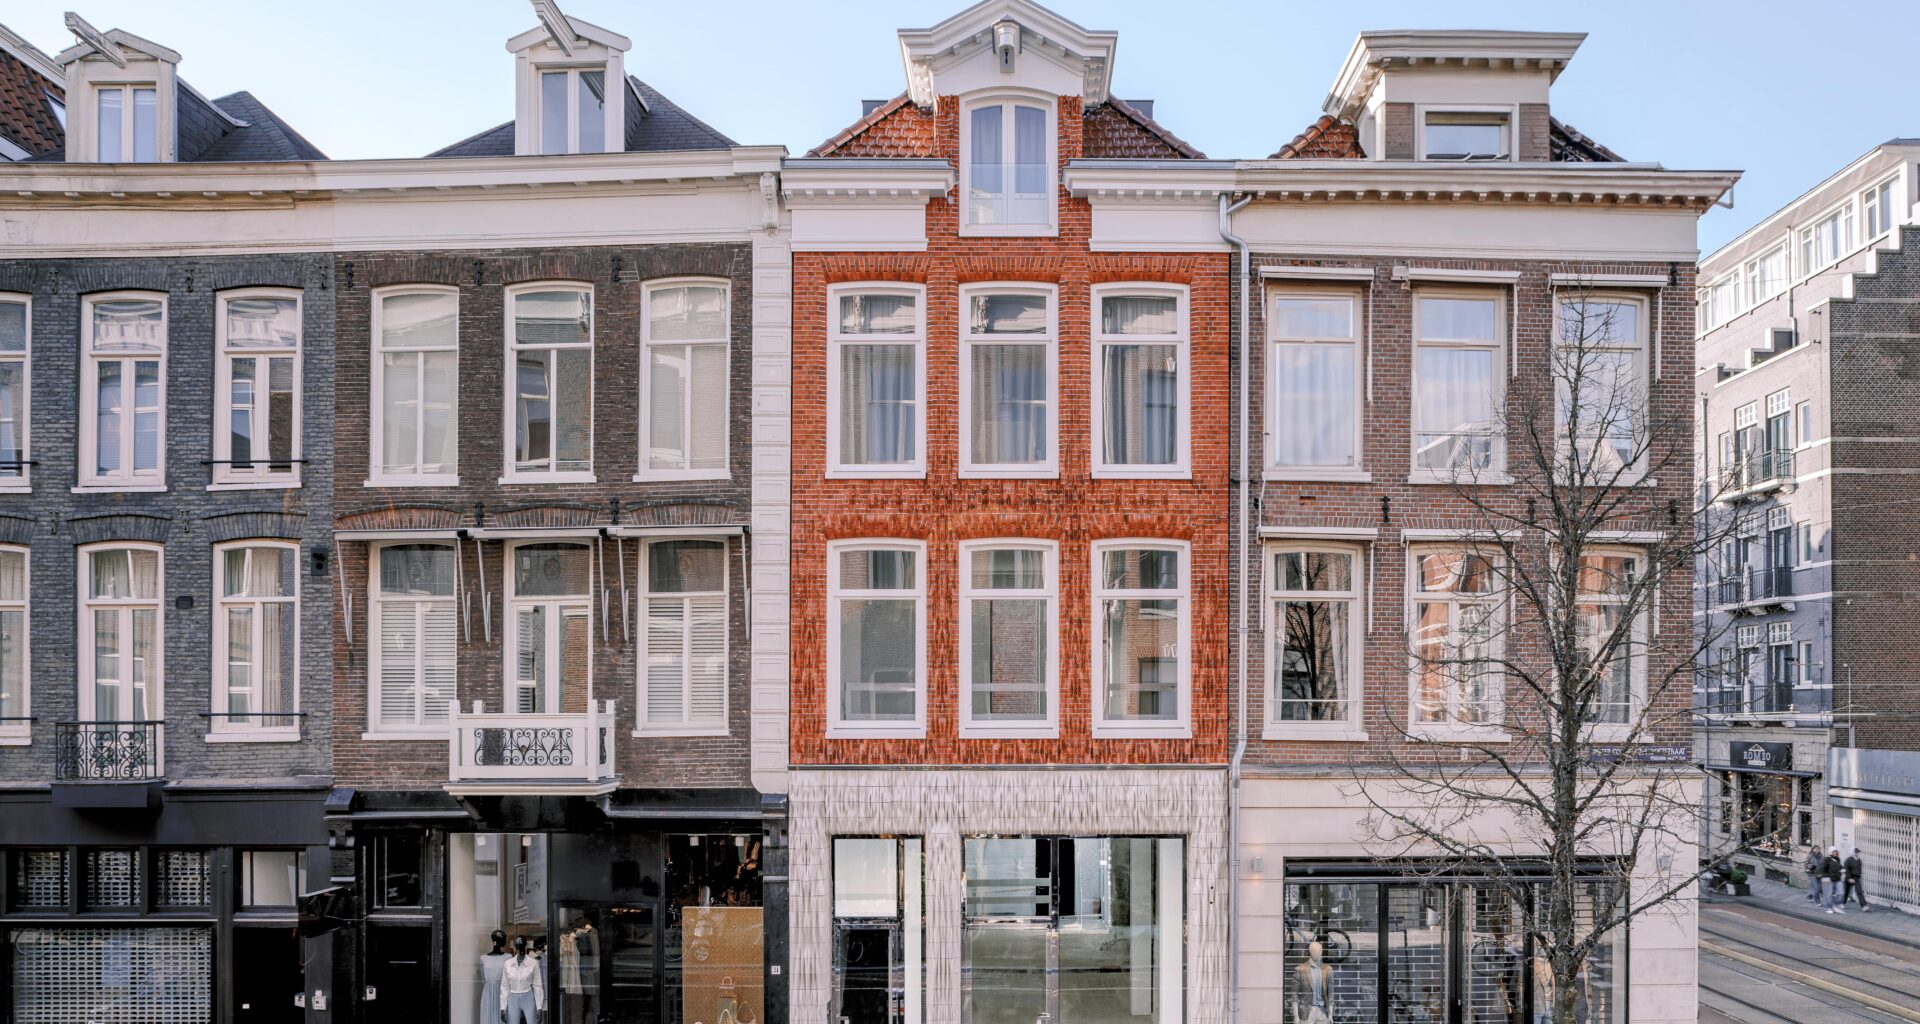 Studio RAP Unveils Cutting-Edge 3D-Printed Ceramic House in Amsterdam